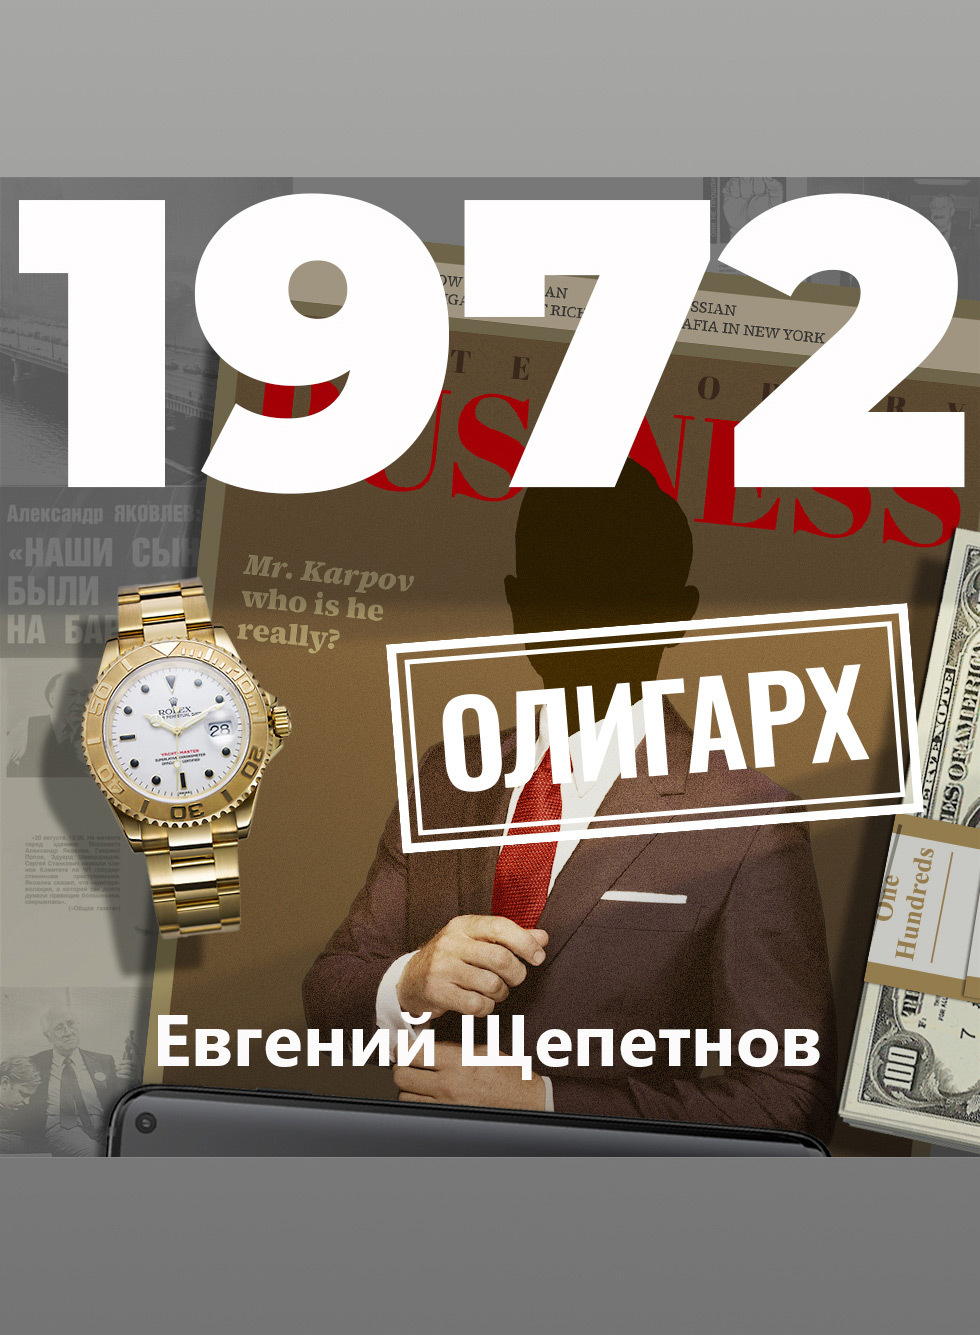 Евгений Щепетнов. 1972. Олигарх. Михаил Карпов 11